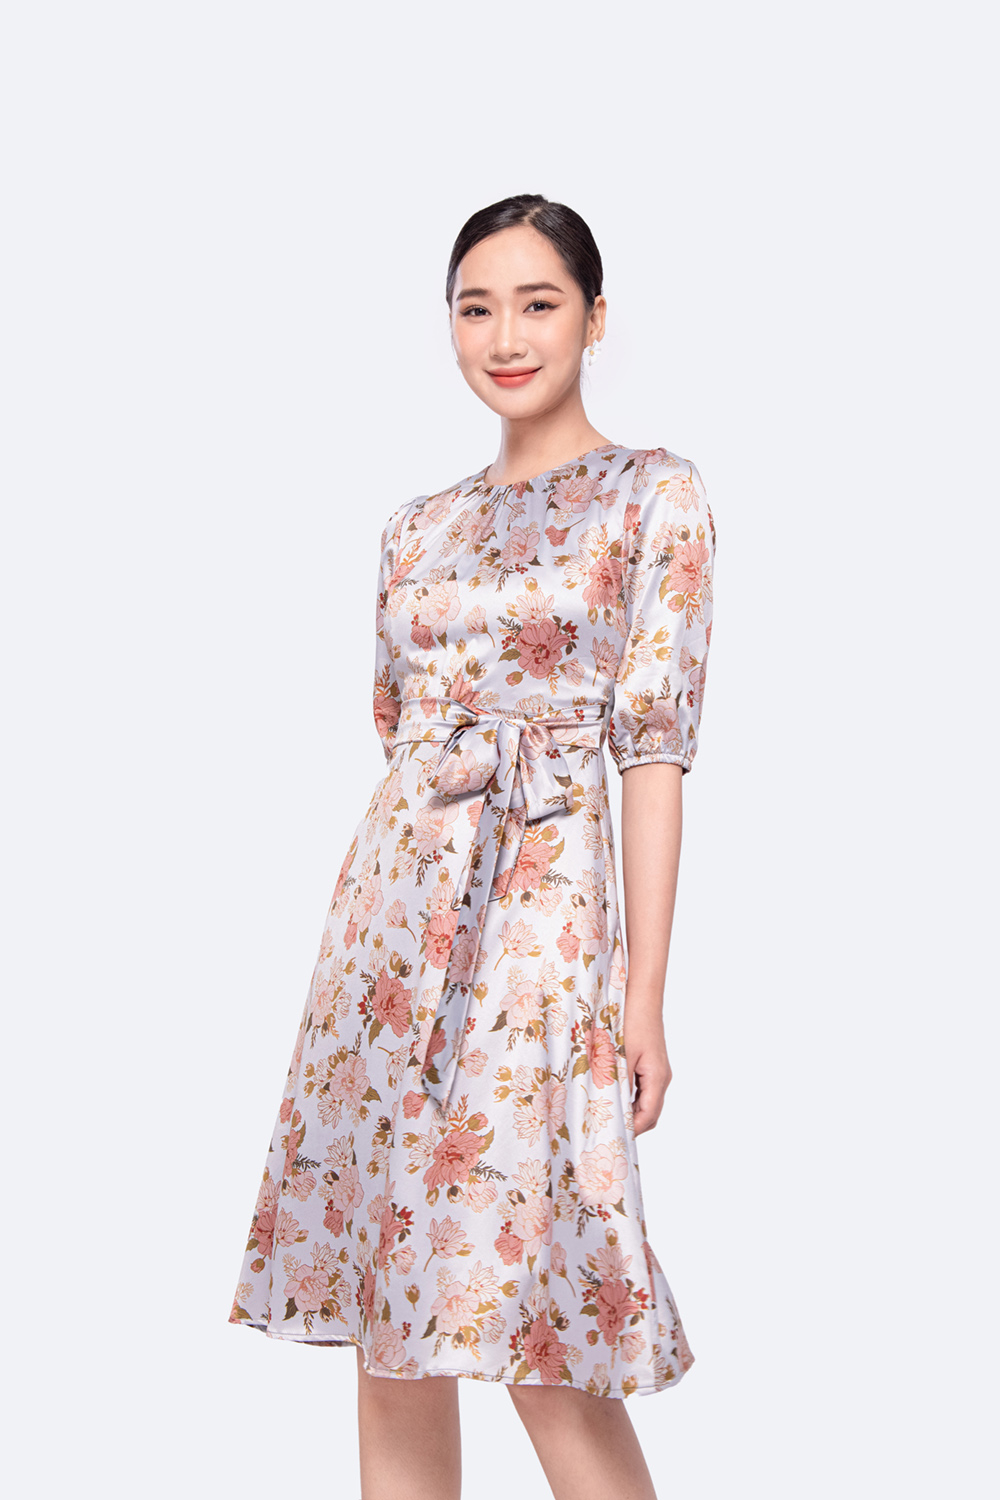 Váy đầm Liền Thân Tay Lỡ đẹp Thời Trang Hè 2021 – 2022 Ngọt Ngào Xinh Xắn •  Adayne.vn